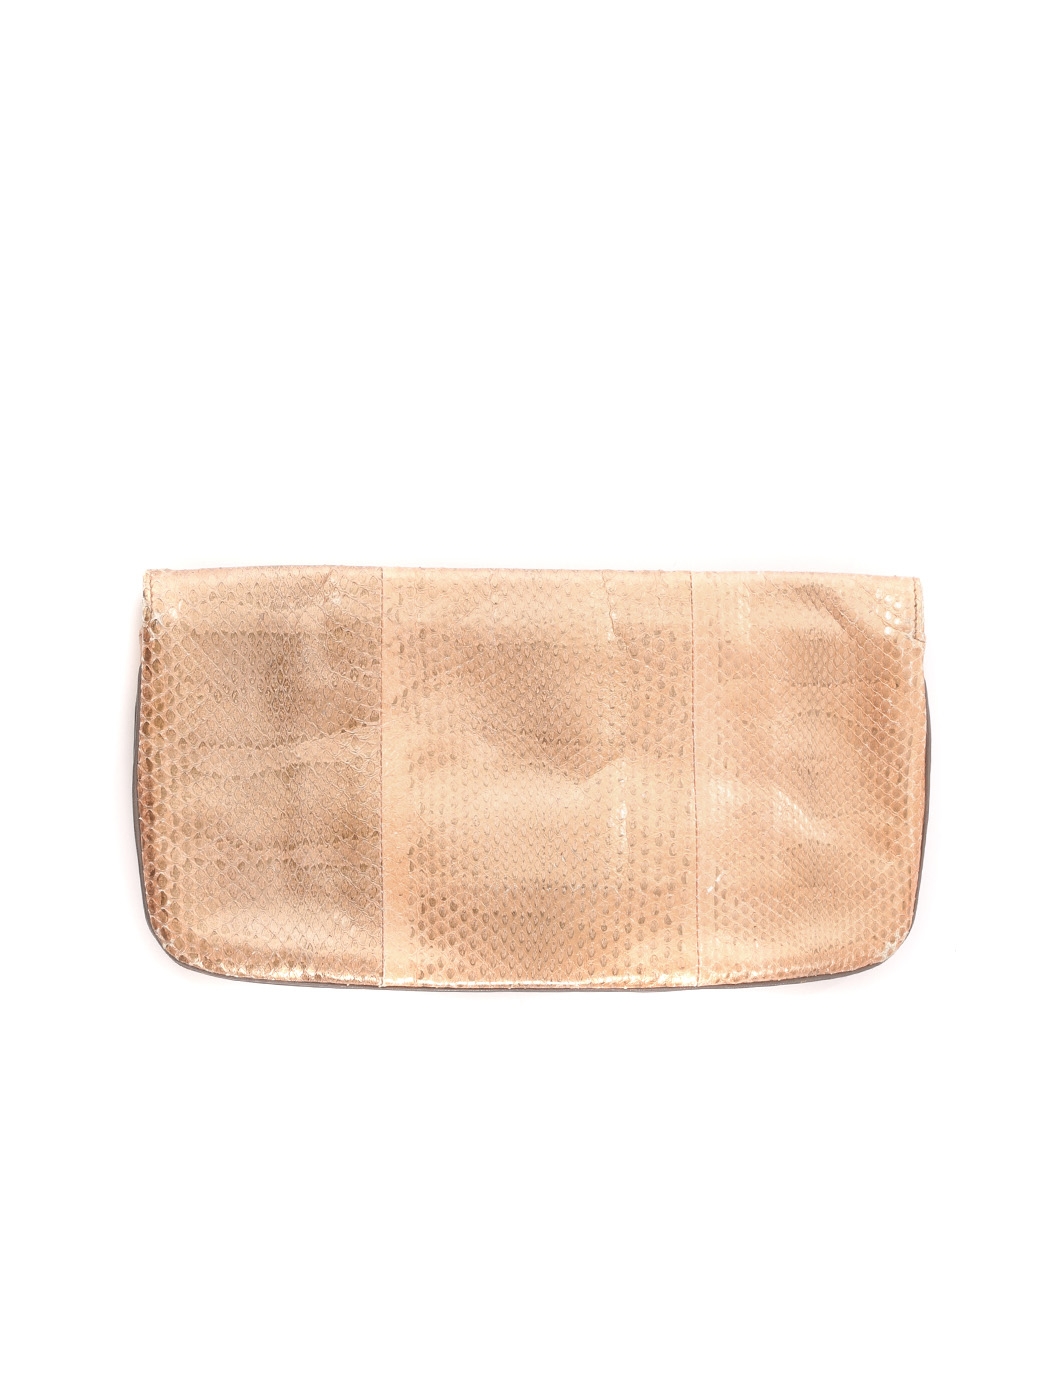 Python Snake Skin Designed by OCEANIC SNAKESKIN Women's Bag